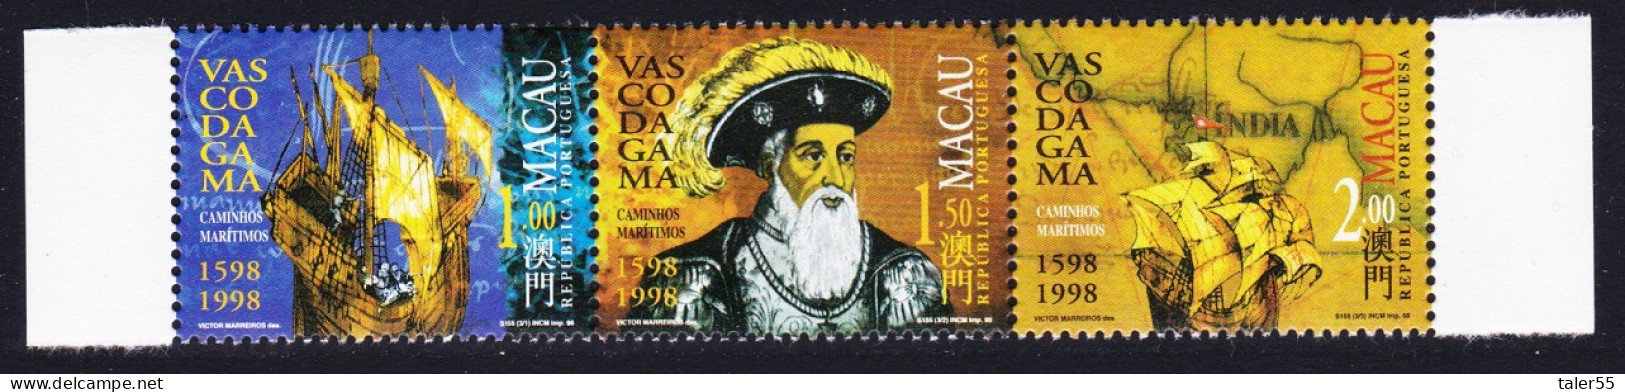 Macao Macau Vasco Da Gama ERROR '1598' Strip Of 3v 1998 MNH SG#1040-1042 Sc#926-928 - Ungebraucht